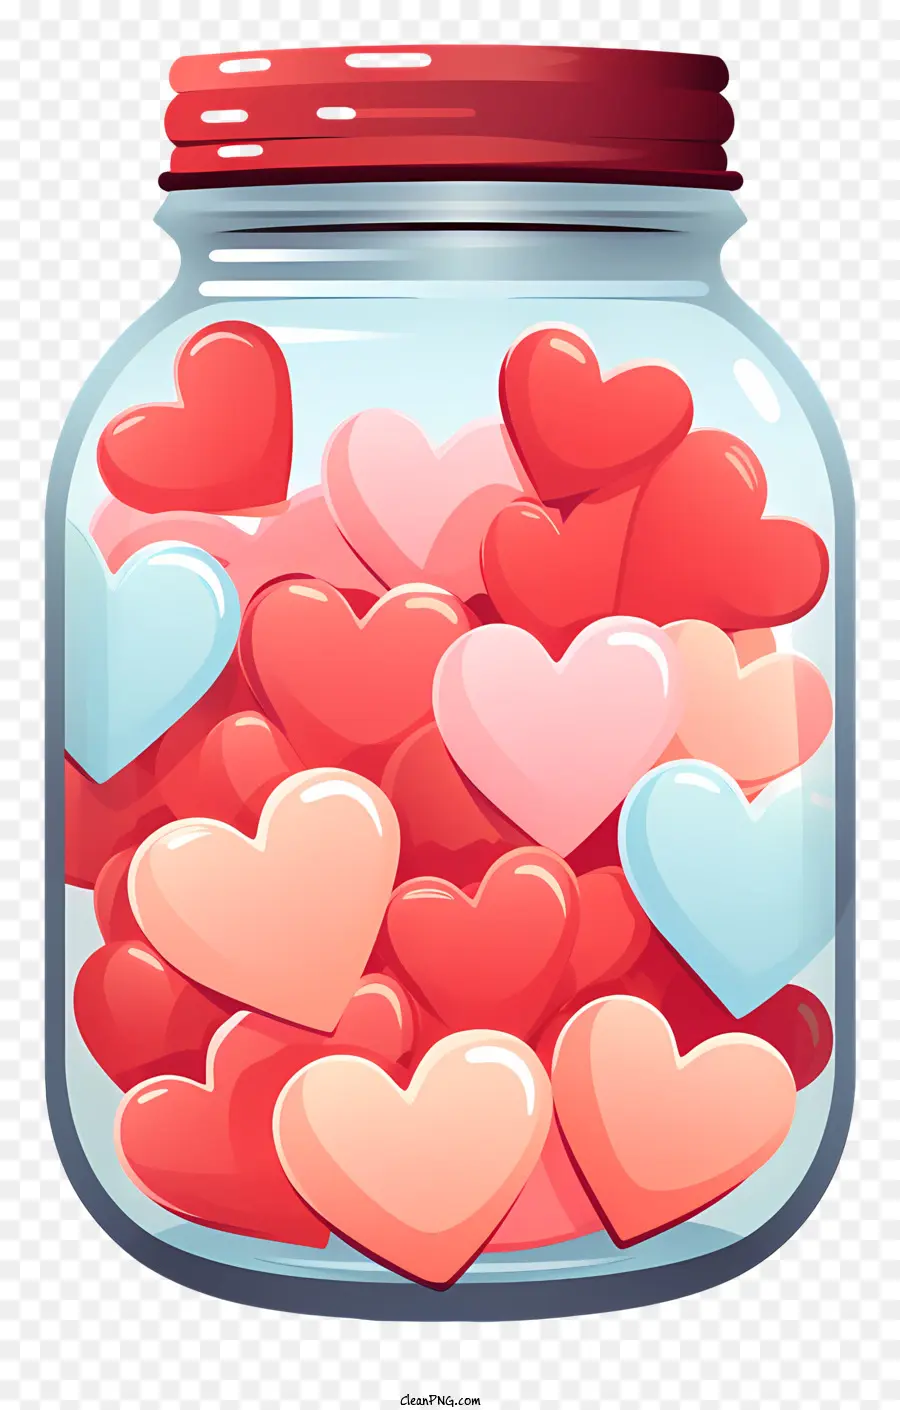 Mason Jar Glas Jar Hearts rosa und rotes Glas mit Deckel - Glasglas gefüllt mit bunten romantischen Herzen